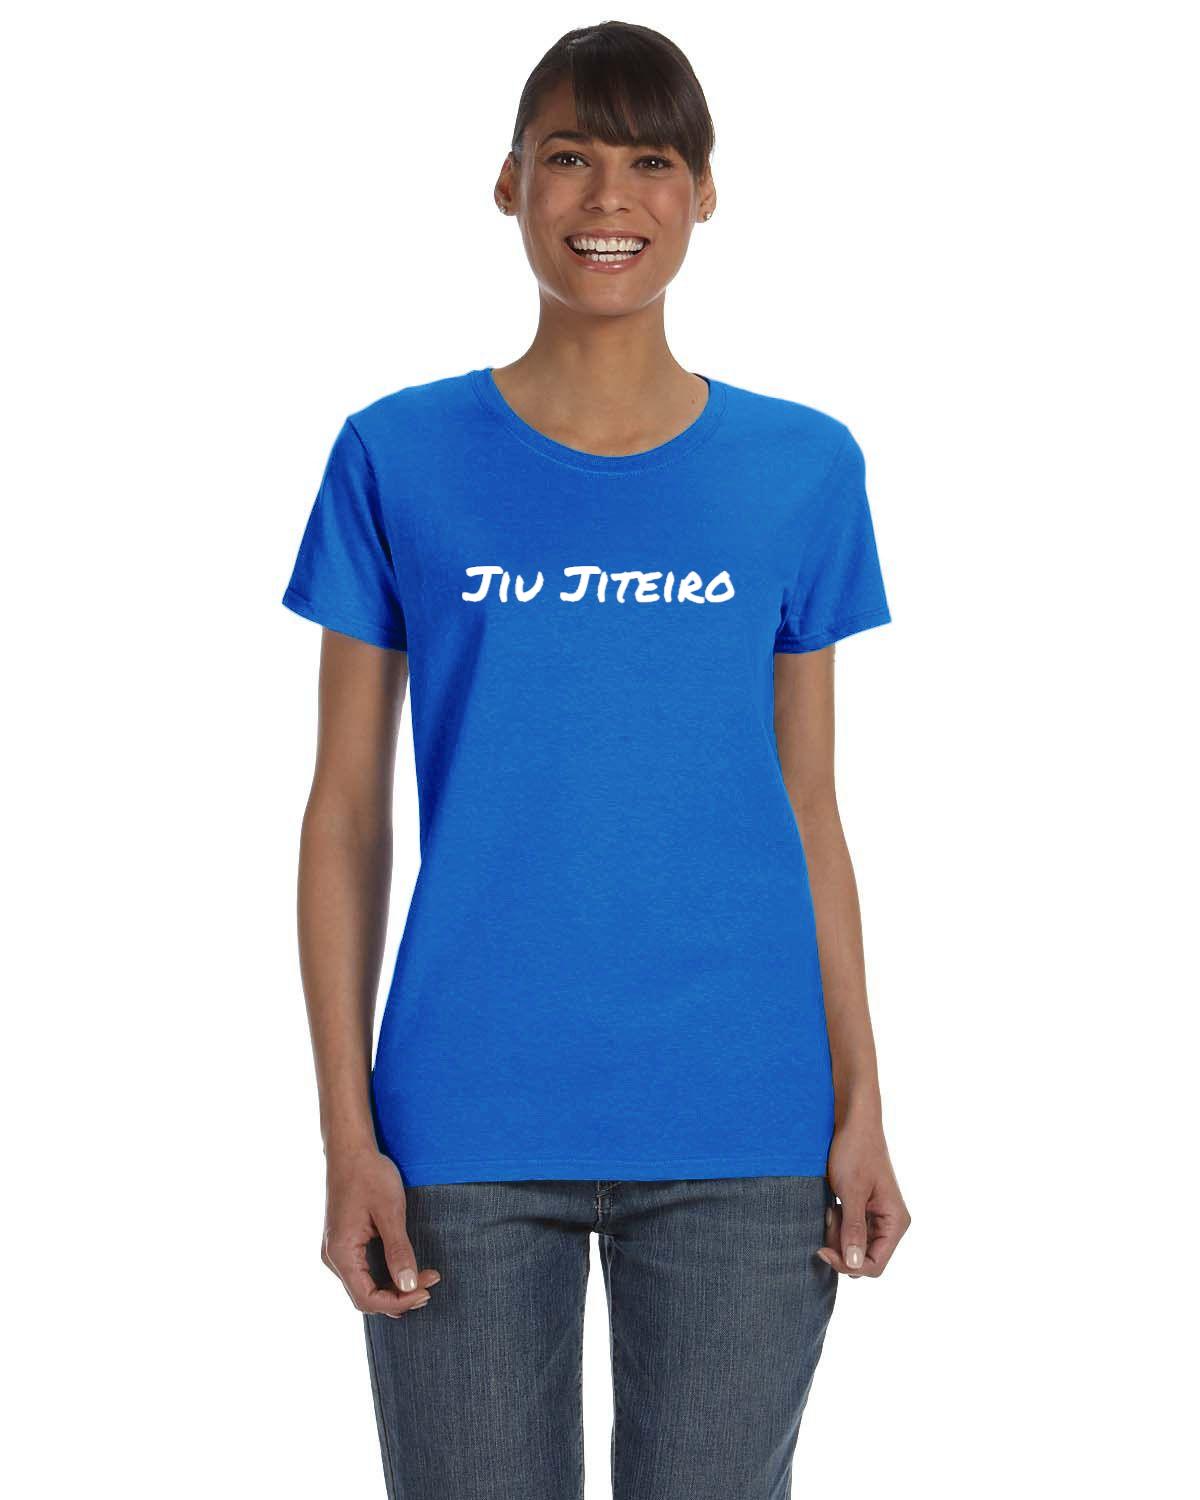 Jiu Jiteiro Womens T-Shirt